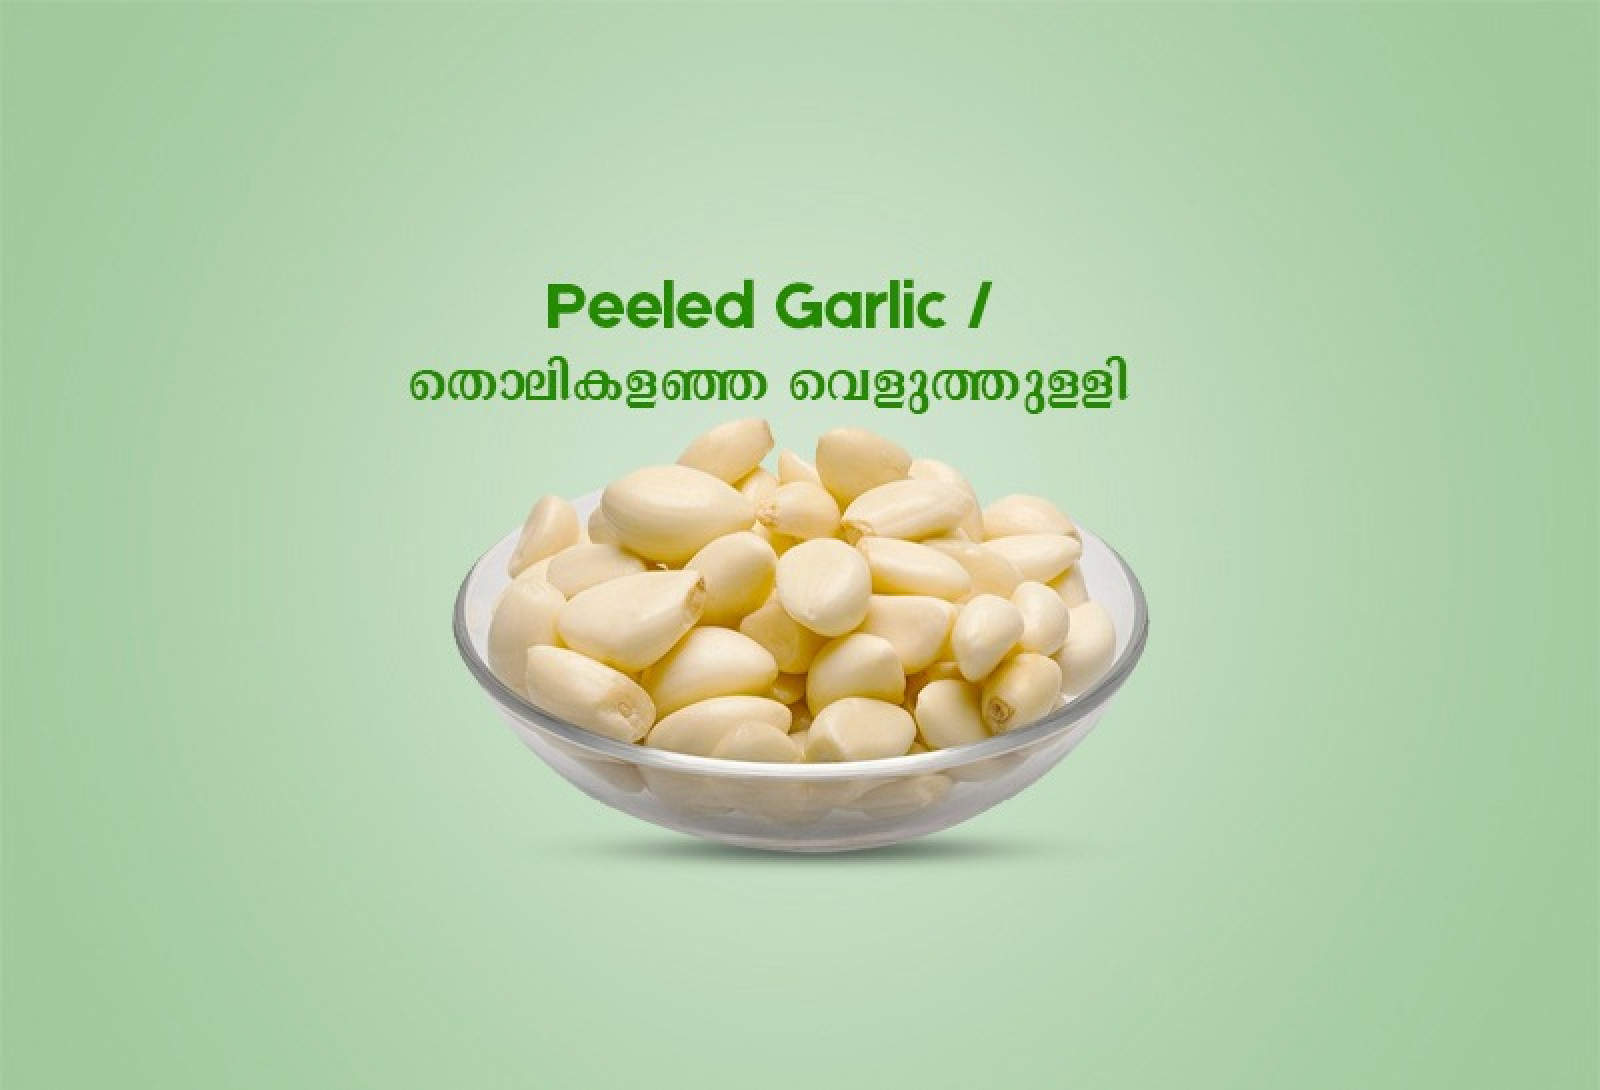 Peeled Garlic / തൊലികളഞ്ഞ വെളുത്തുള്ളി  -100gm 